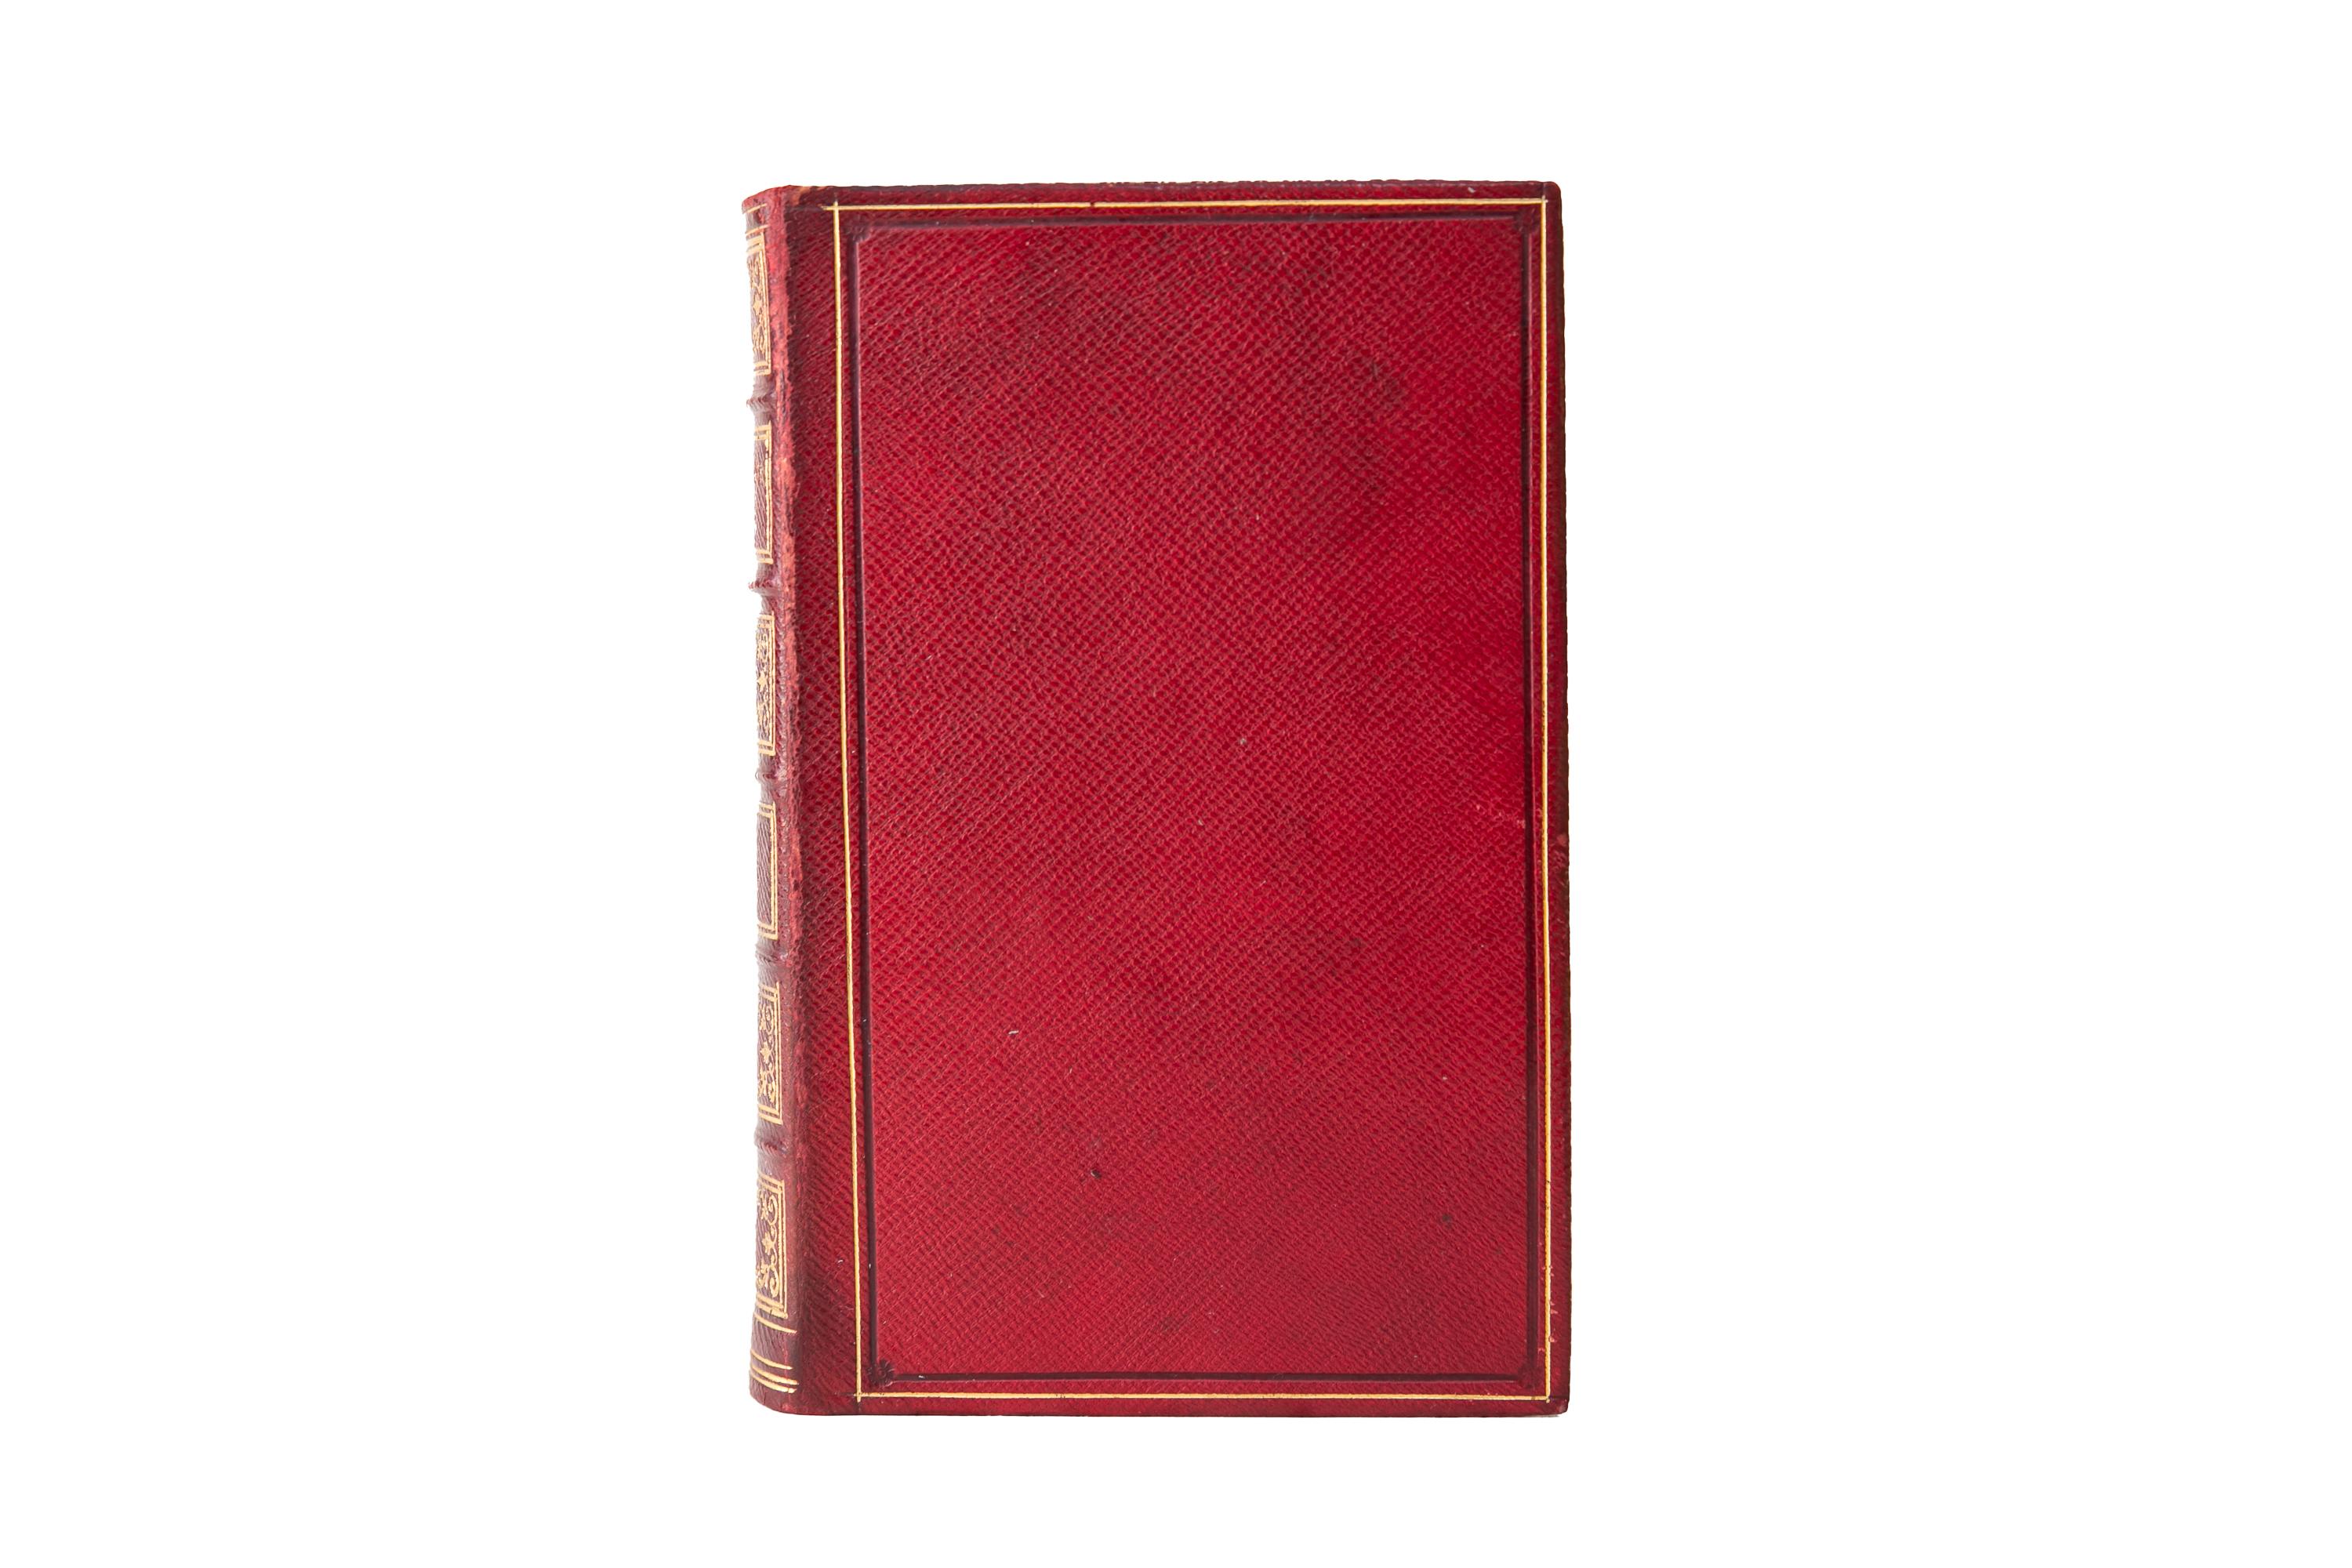 2 Volumes. Elizabeth Barrett Browning, The Poems Reliure en plein maroquin rouge, avec les couvertures et les dos à nerfs dorés. Toutes les tranches sont dorées. New York : C.S.. Francis & Co, 1853.